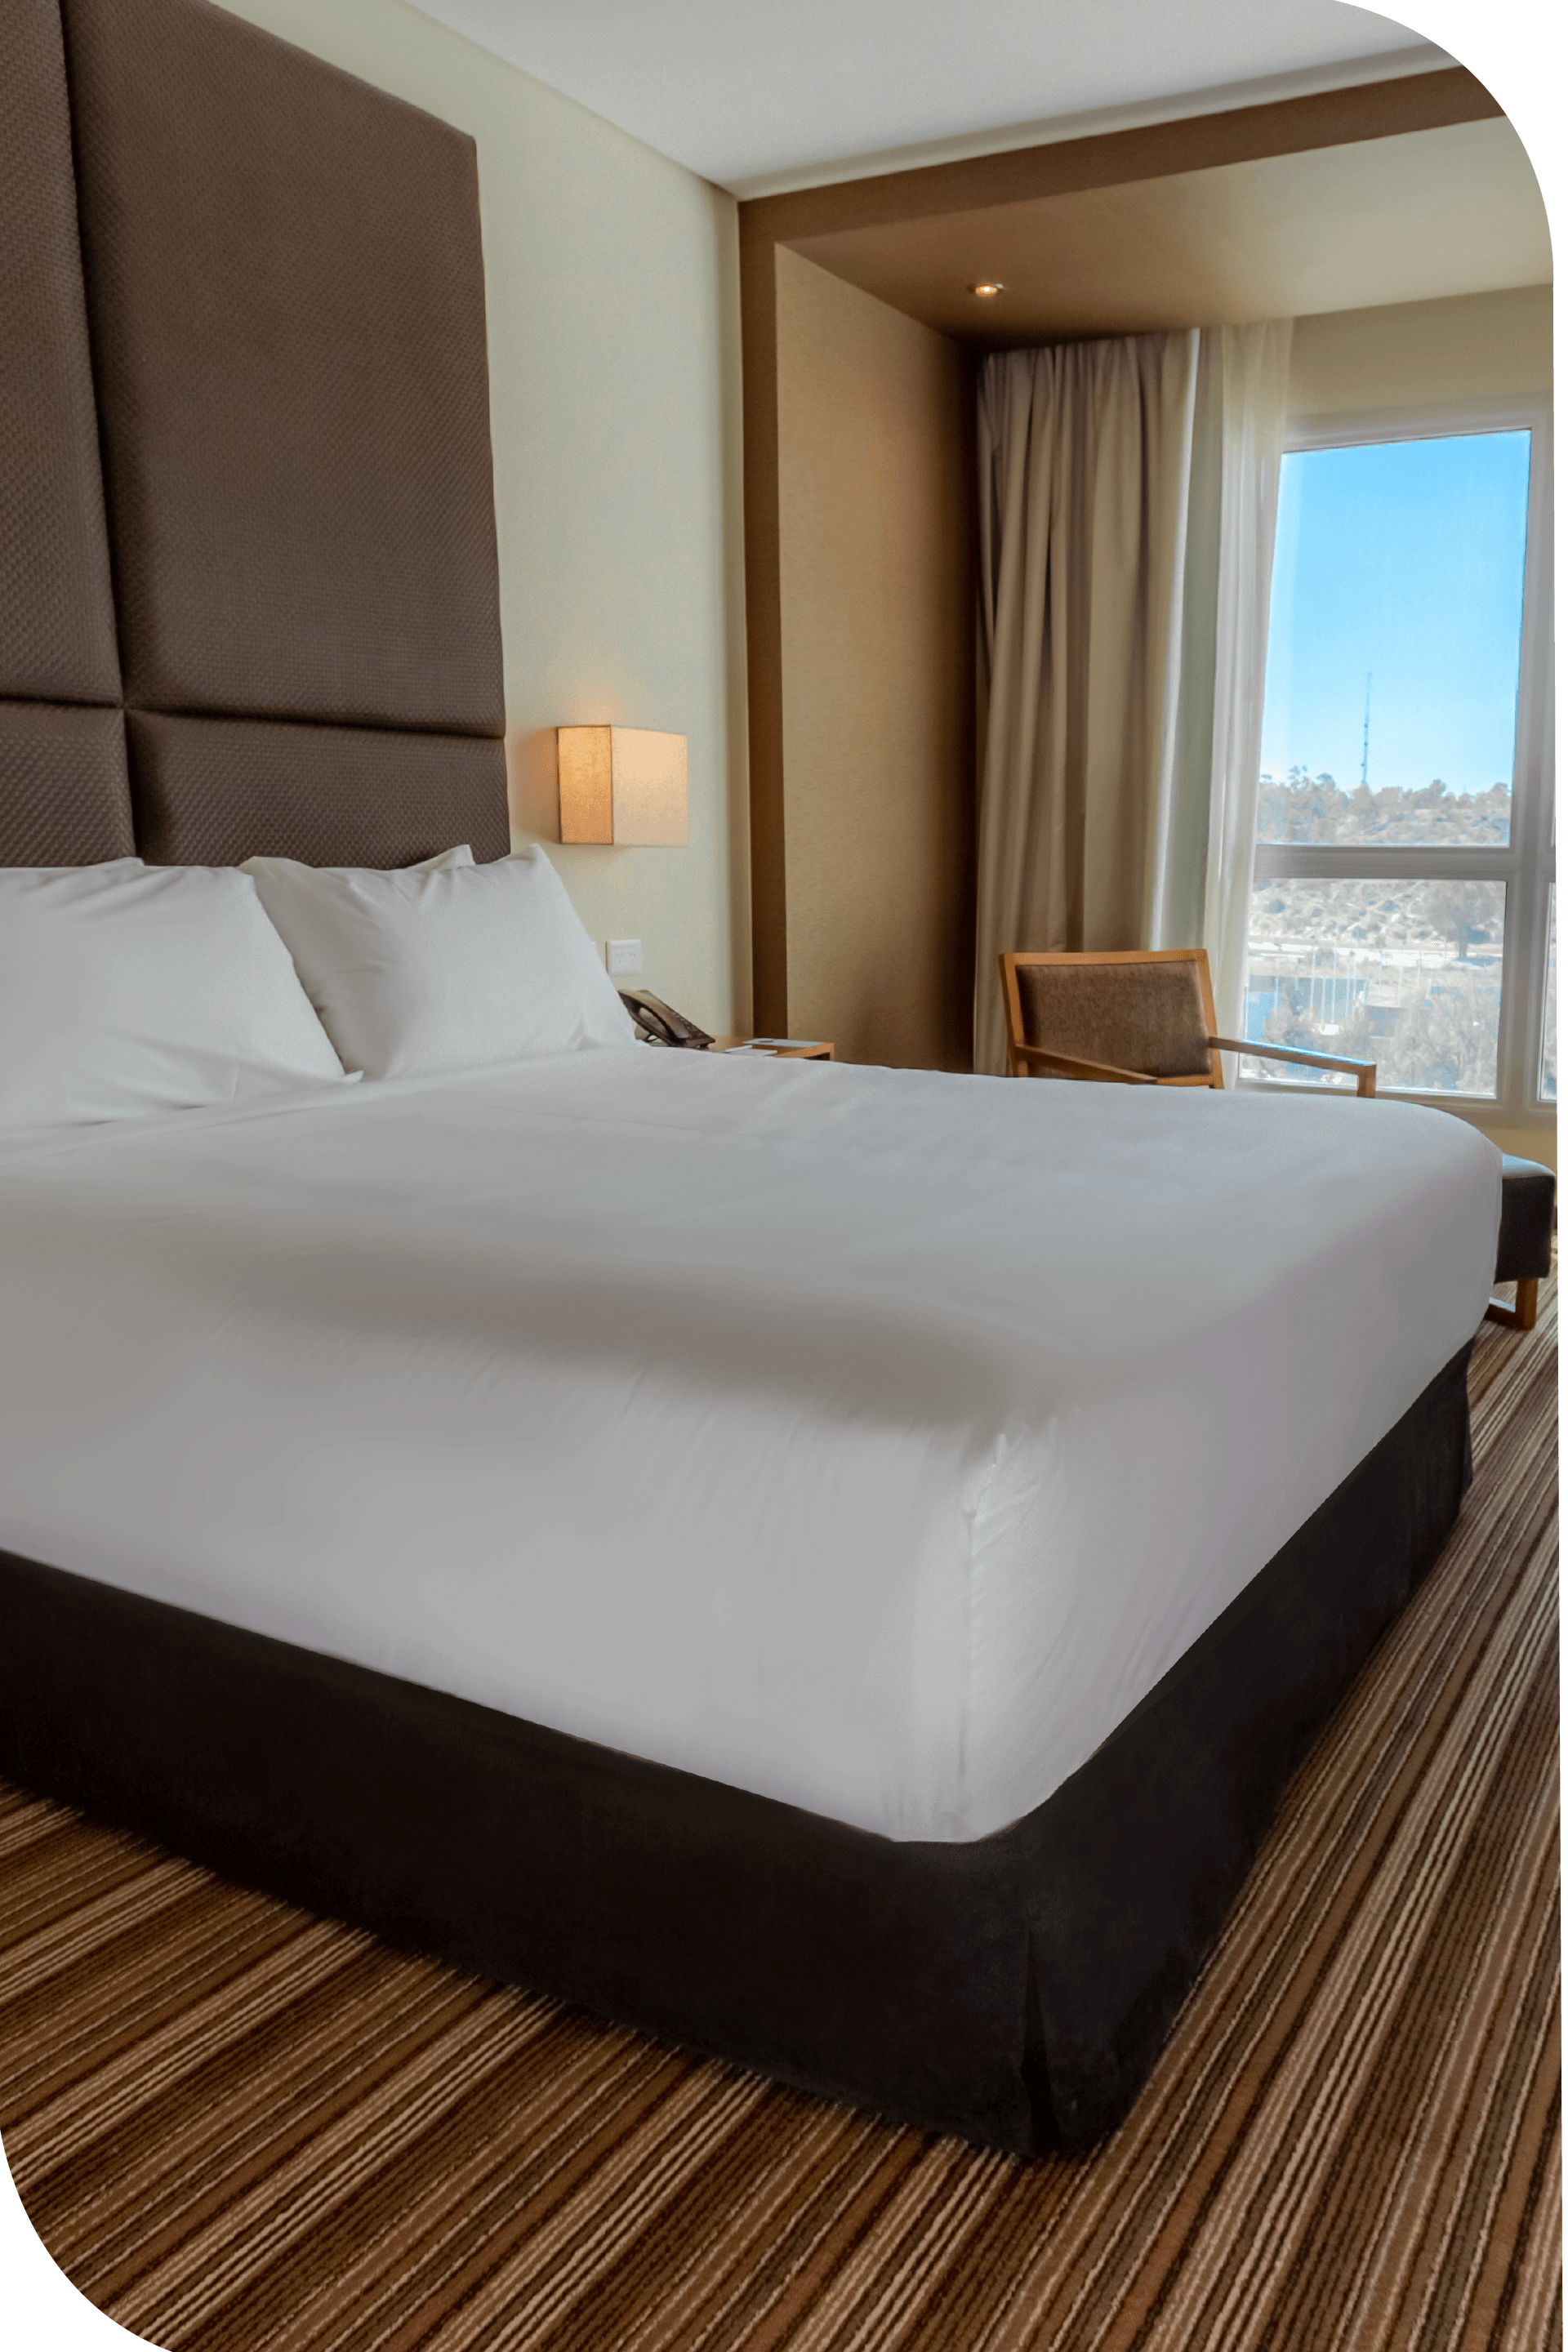 Una habitación de hotel con una cama king size y un gran ventanal.